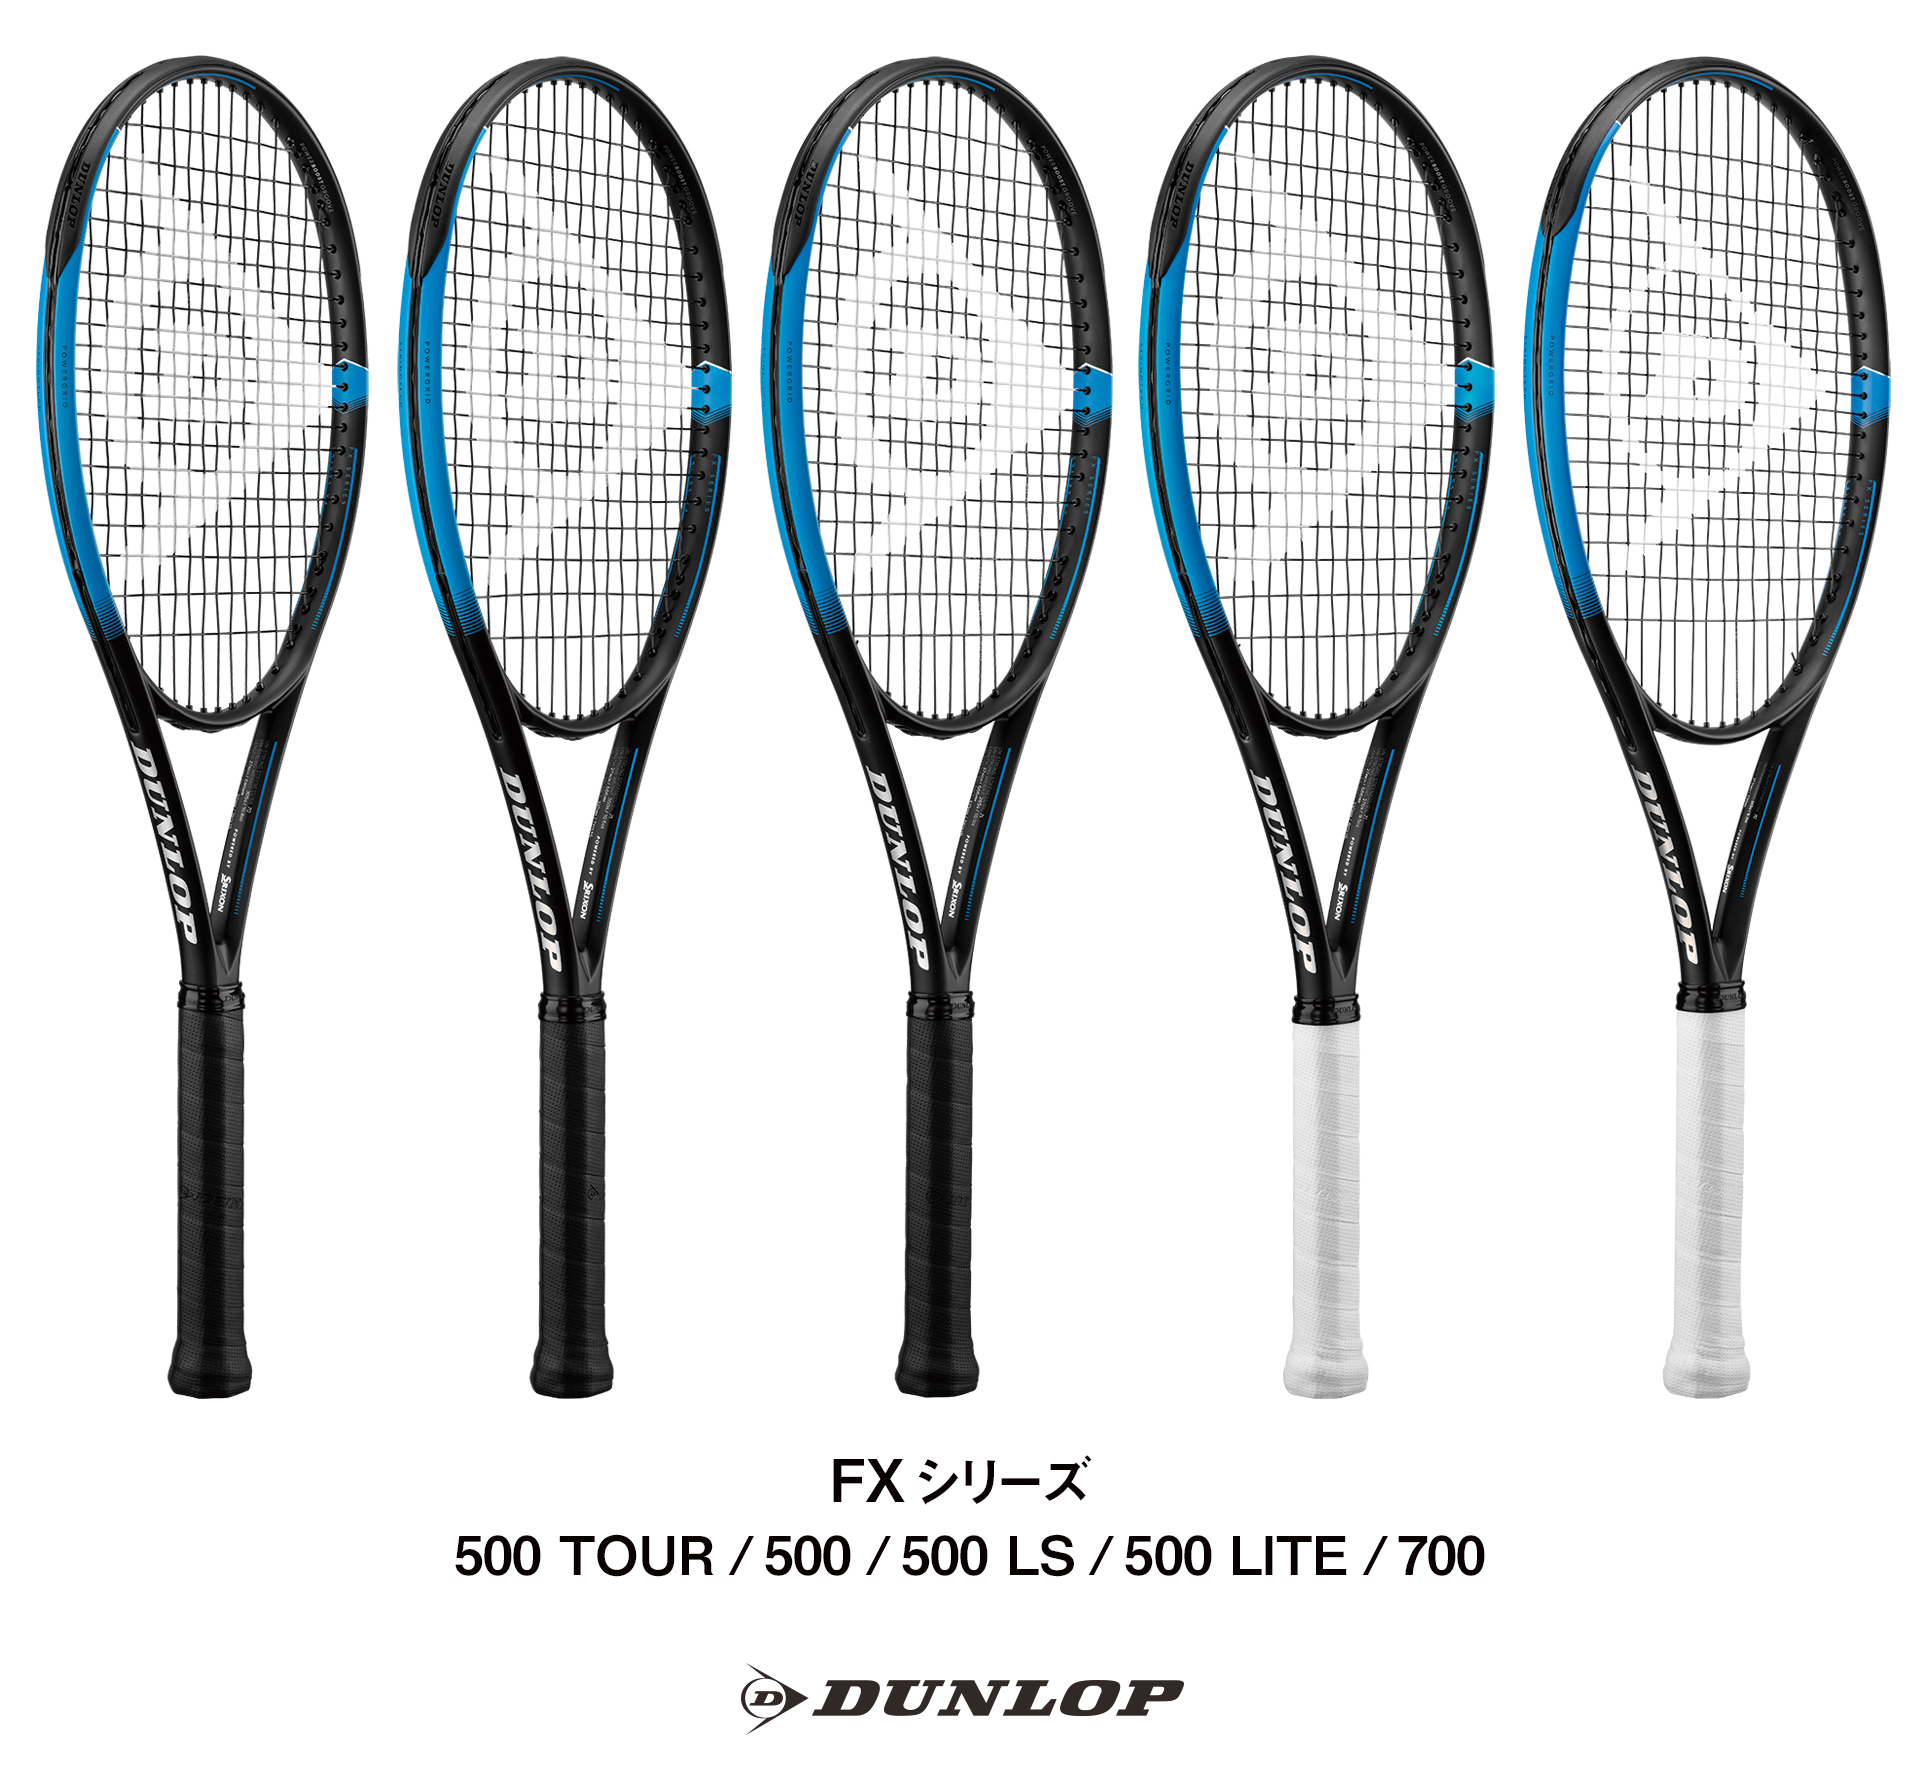 ダンロップテニスラケット「FX」シリーズ5機種を新発売 ～新形状、新構造、新素材でダンロップ史上かつてないパワーと柔らかさを両立～